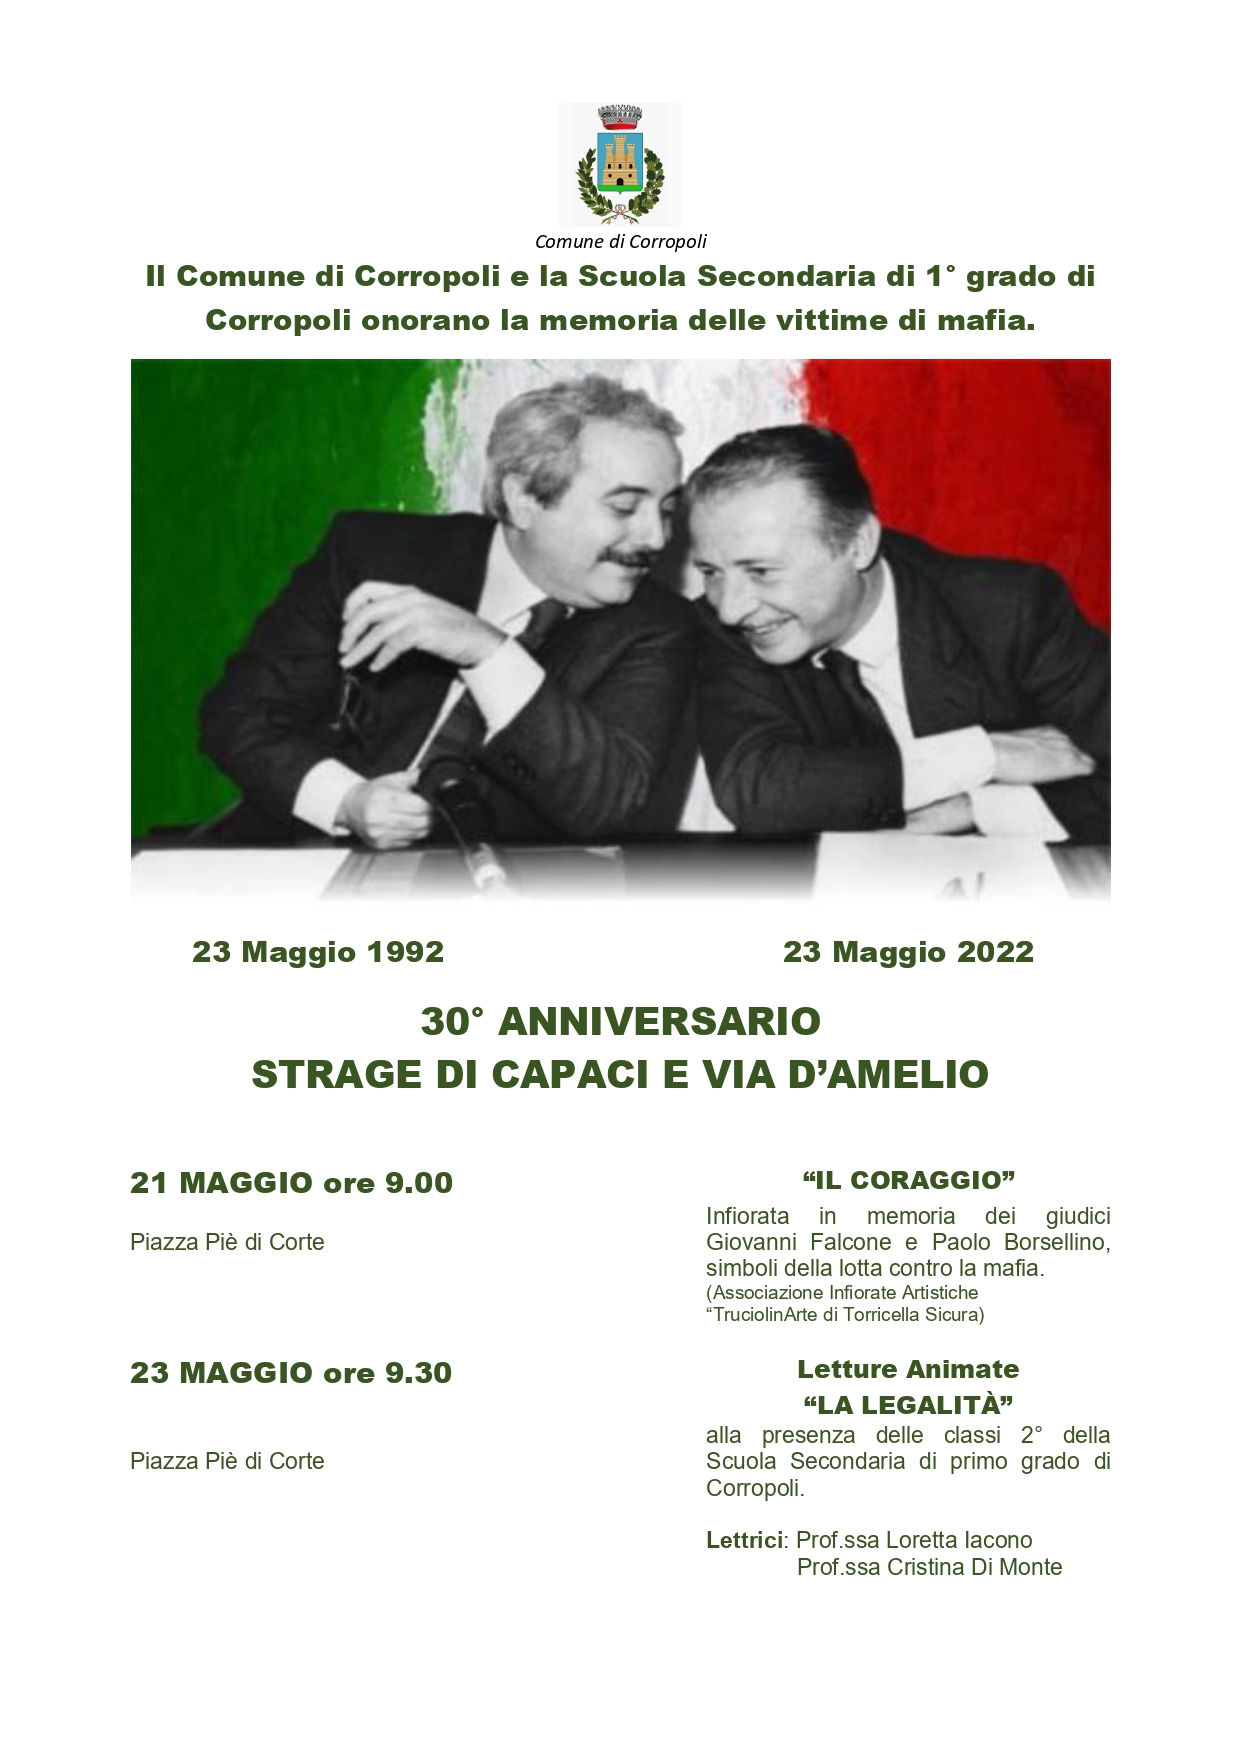 Il Comune di Corropoli e la Scuola Secondaria di 1° grado di Corropoli onorano la memoria delle vittime di mafia.